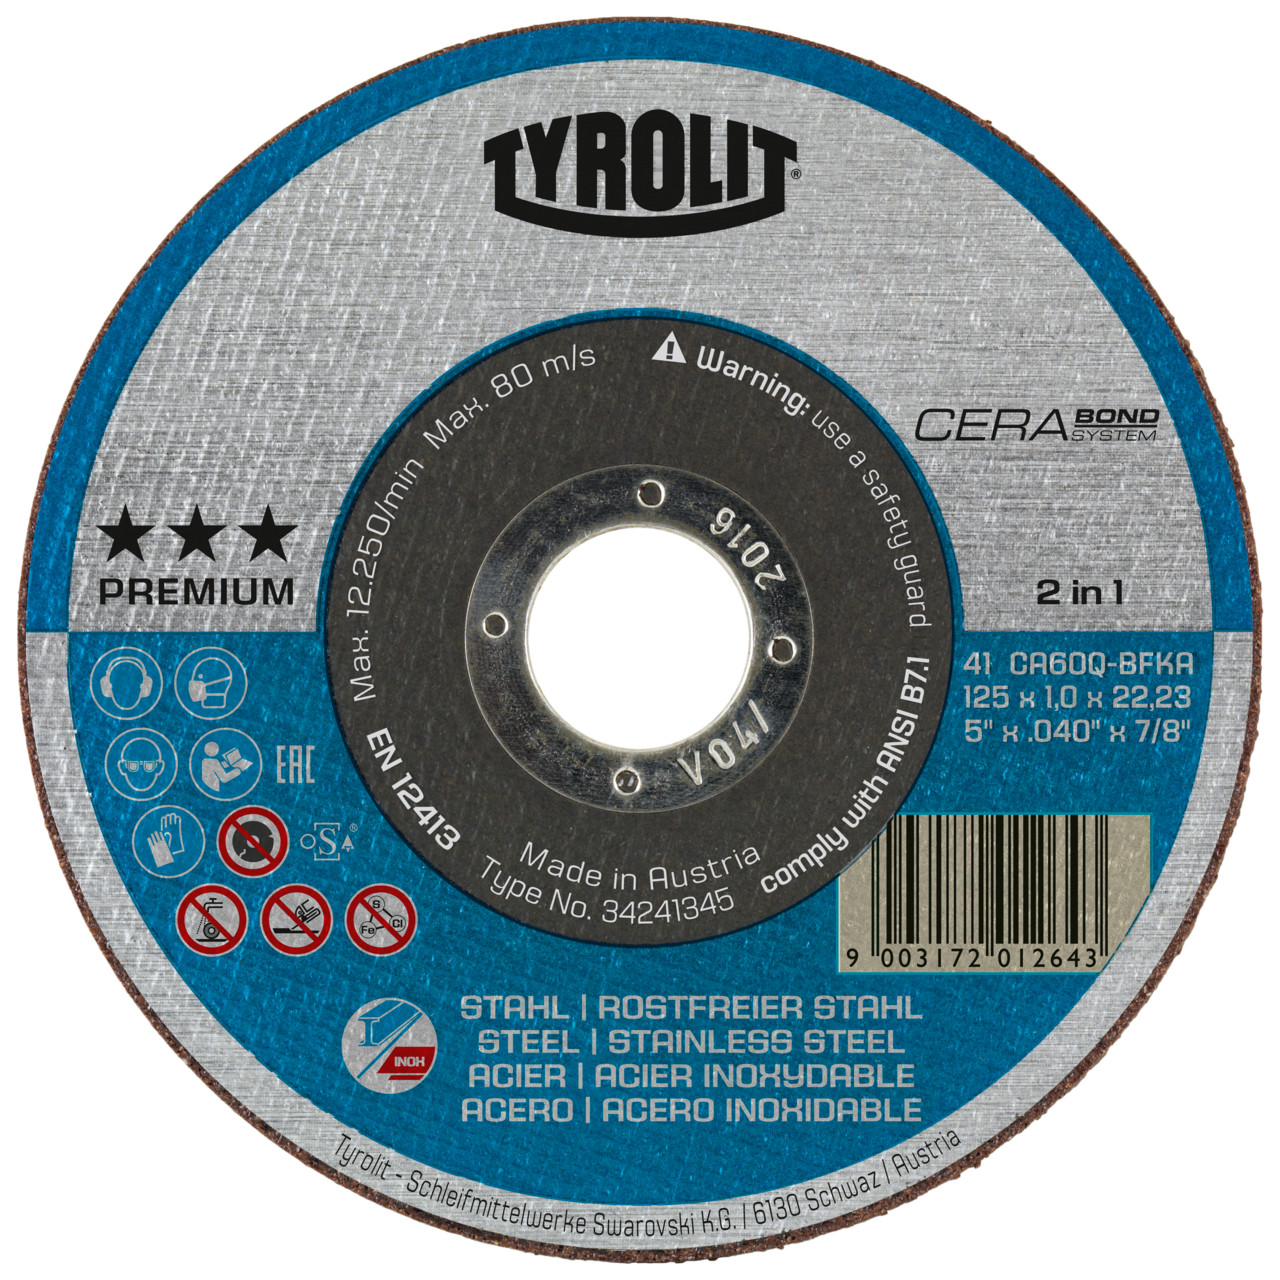 TYROLIT CERABOND disco de corte DxDxH 125x1,3x22,23 2en1 para acero y acero inoxidable, forma: 41 - versión recta, Art. 34597628 (antiguo Art. 34256273)